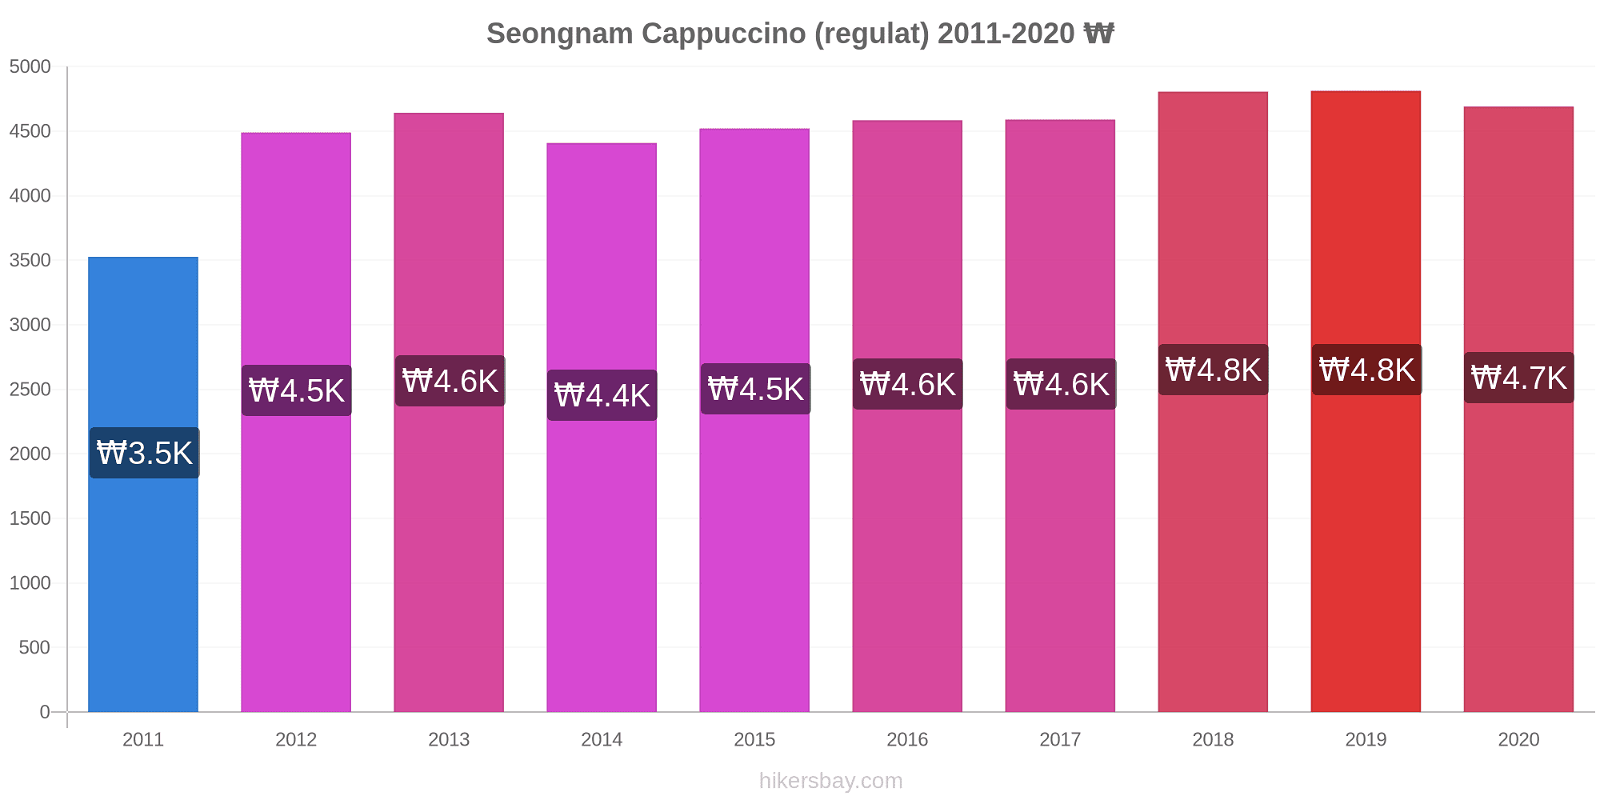 Seongnam modificări de preț Cappuccino (regulat) hikersbay.com